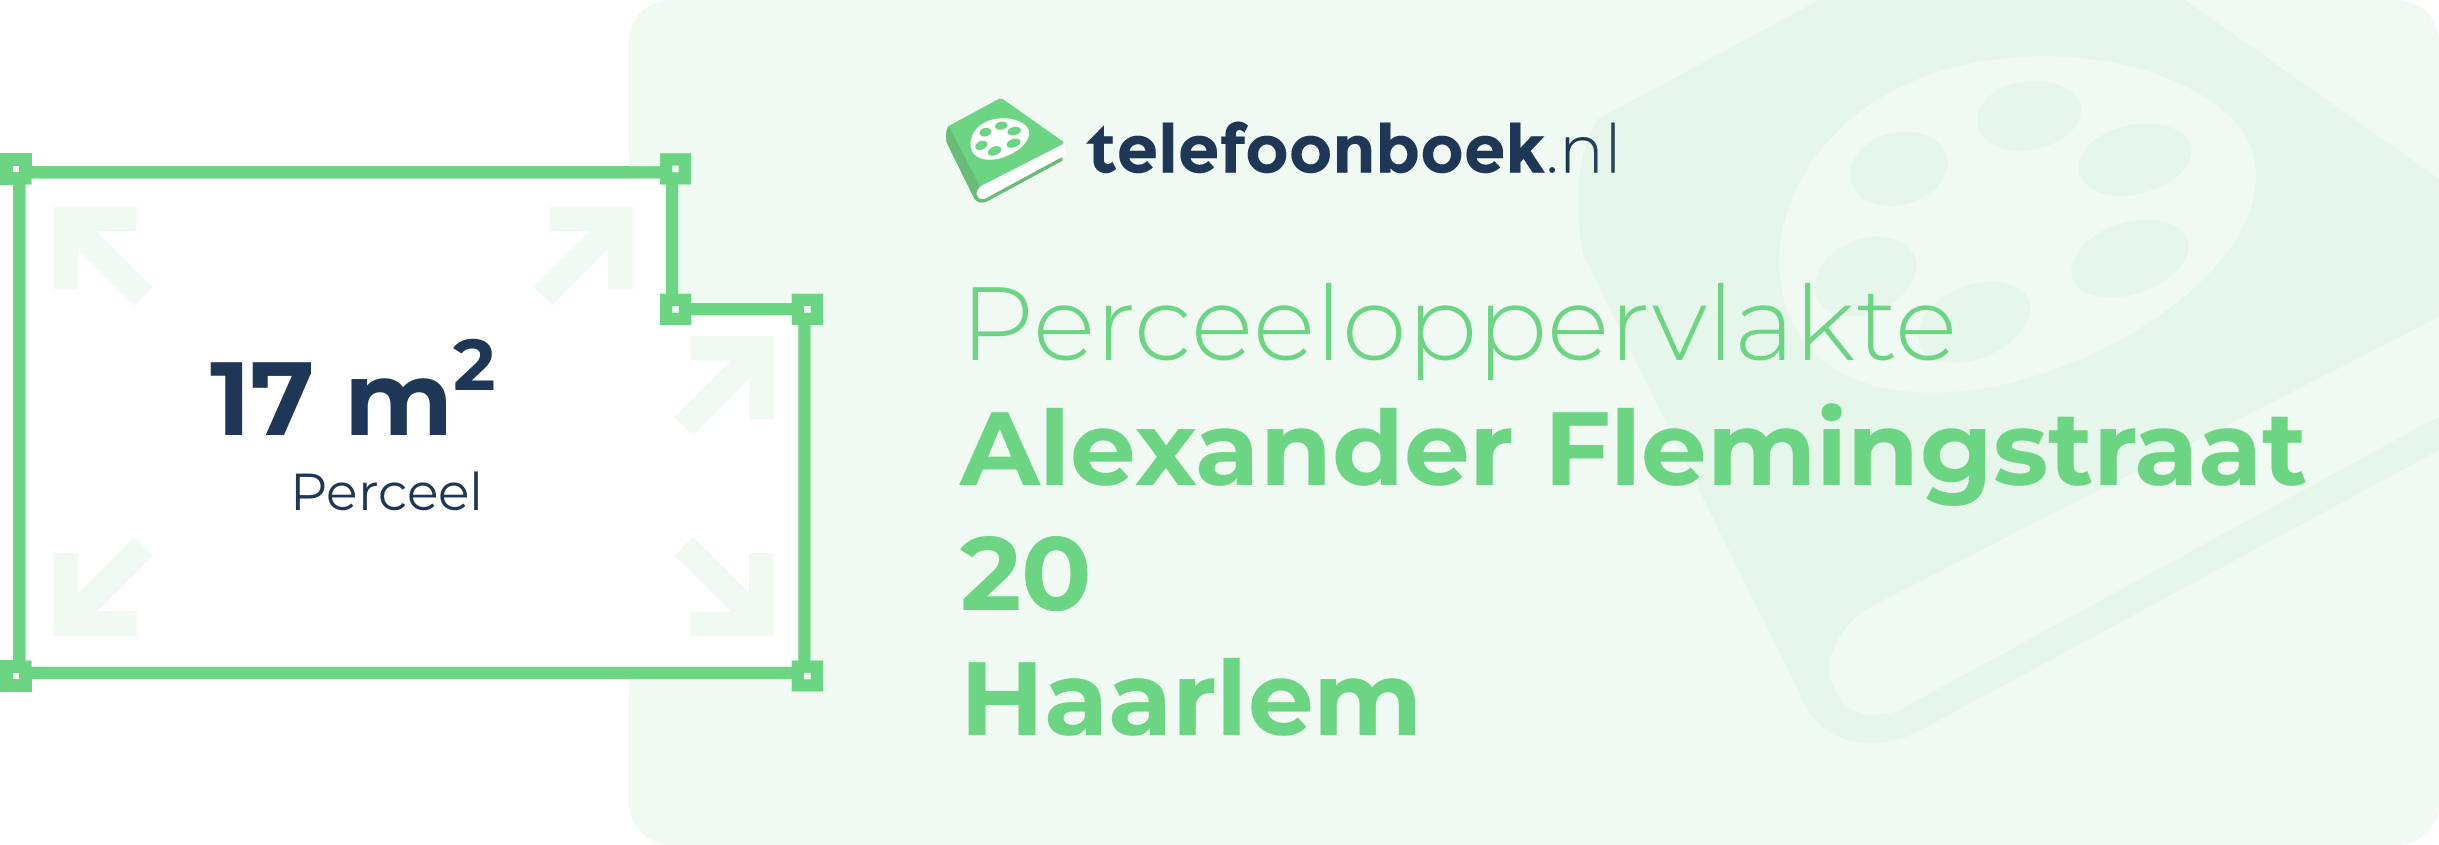 Perceeloppervlakte Alexander Flemingstraat 20 Haarlem